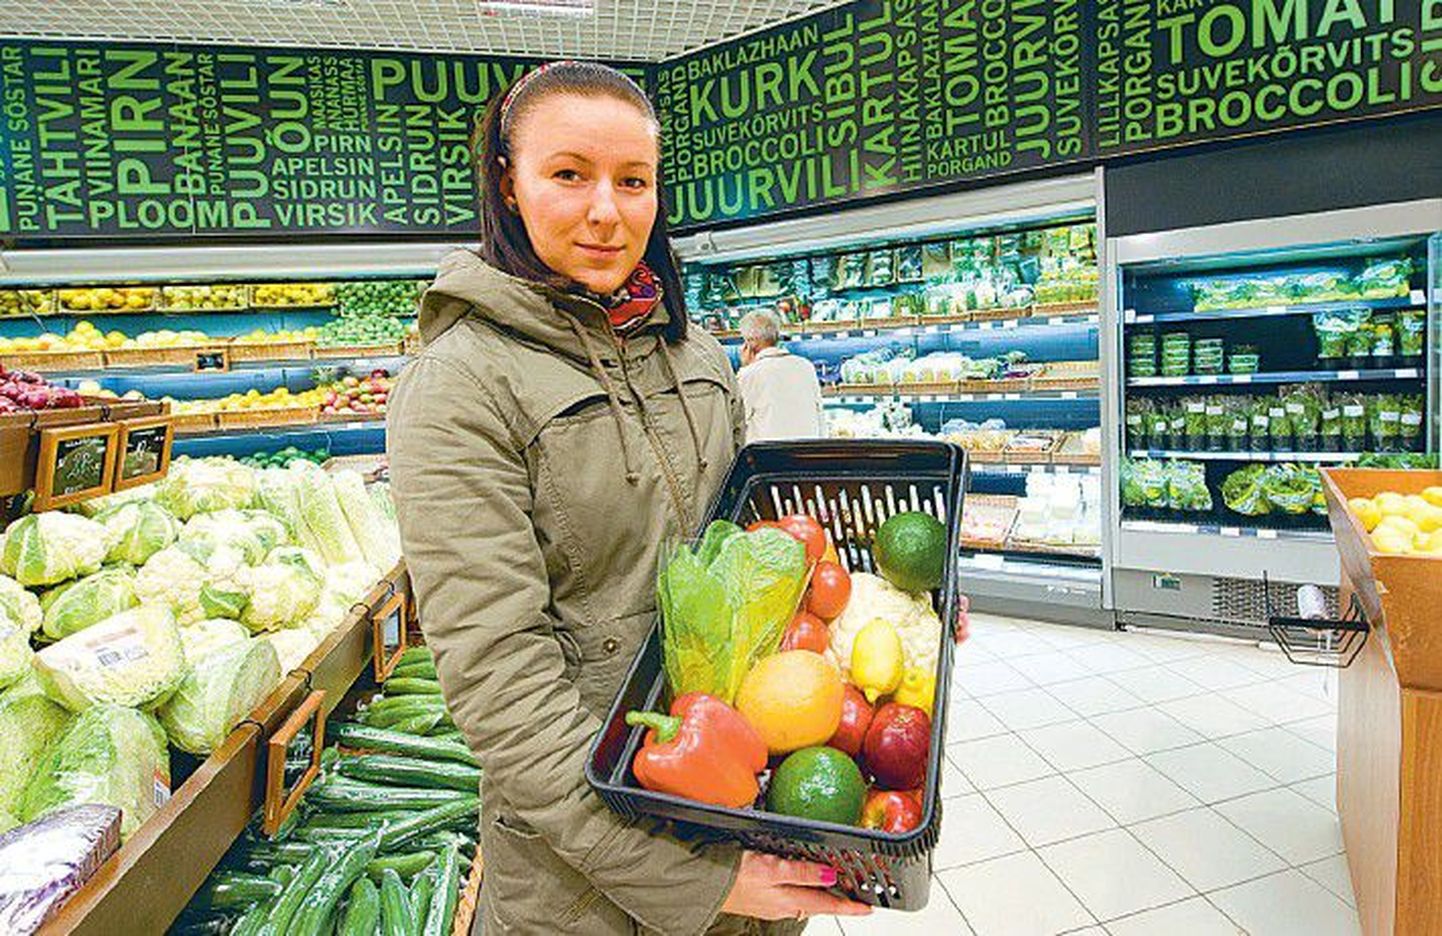 Кятлин Вильба, начавшая познавать прелести веганства, в продуктовом отделе Tallinna Kaubamaja показывает овощи и фрукты, которыми она питалась первую неделю своего вегетарианства.